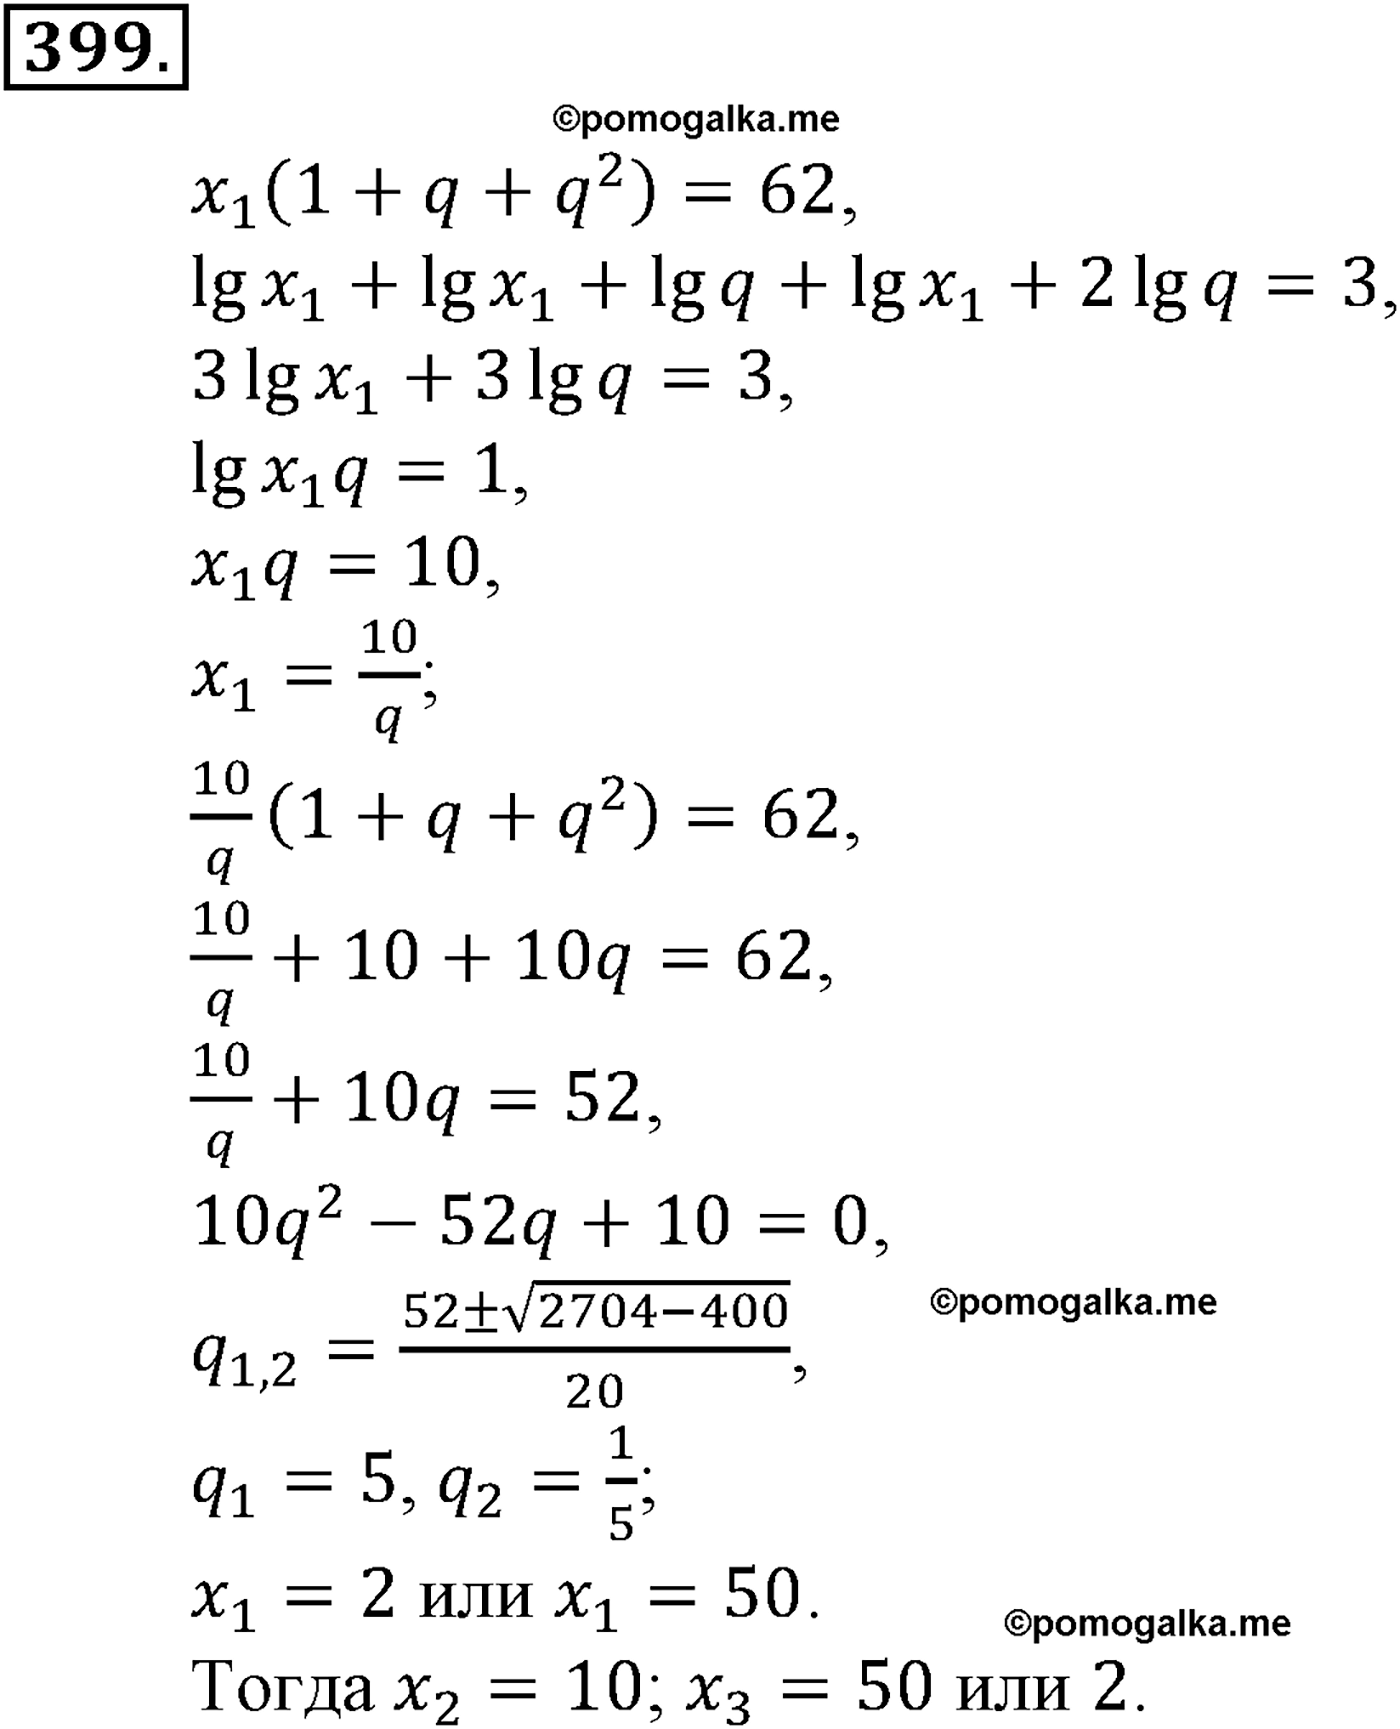 разбор задачи №399 по алгебре за 10-11 класс из учебника Алимова, Колягина